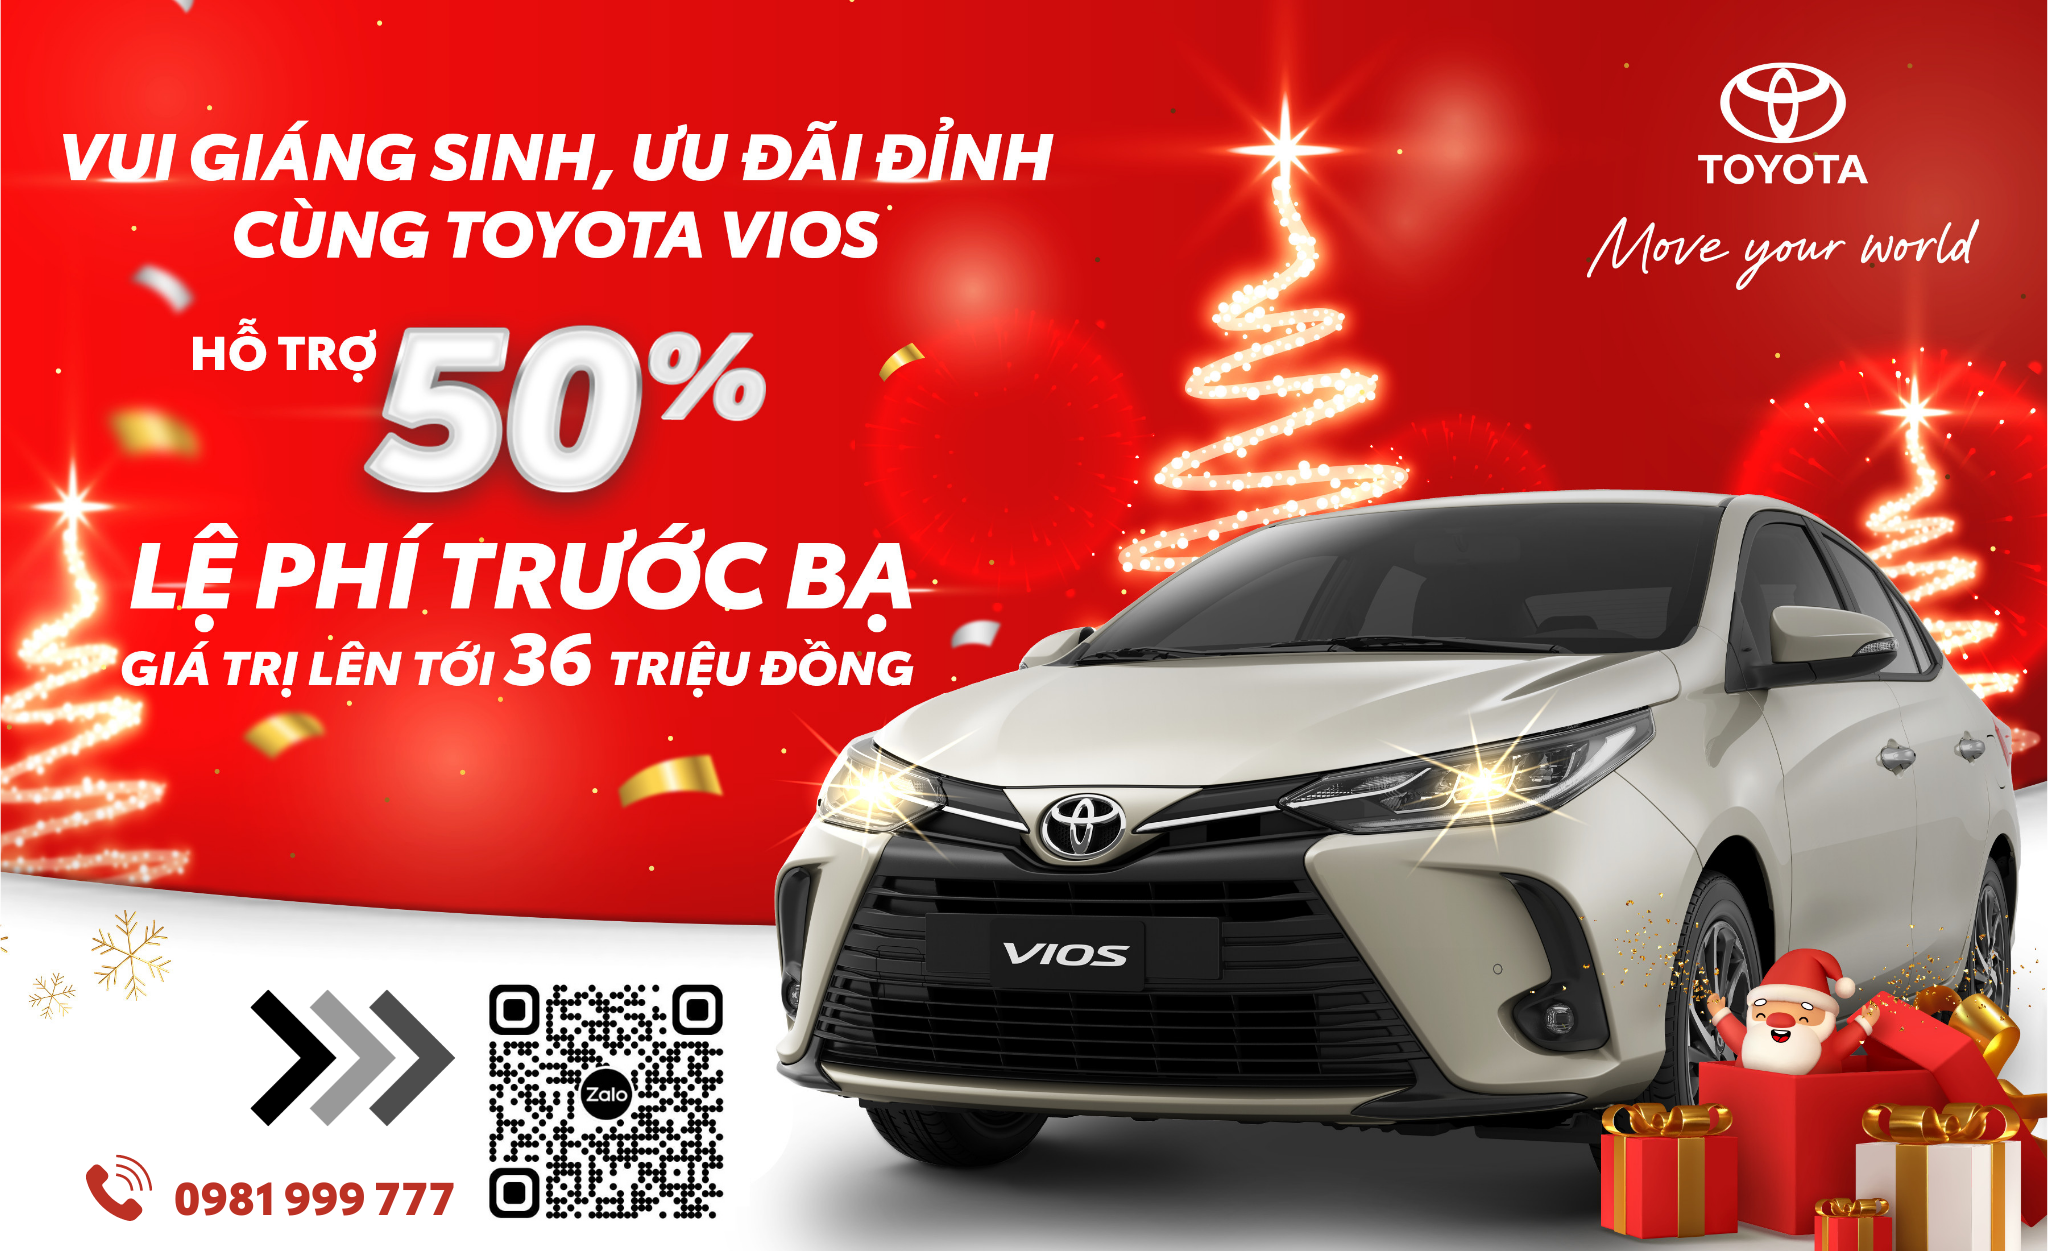 Chương trình khuyến mại - “Vui giáng sinh, ưu đãi đỉnh cùng Toyota Vios”  từ hệ thống Đại lý Toyota  trên toàn quốc cho khách hàng mua xe tháng 12/2022